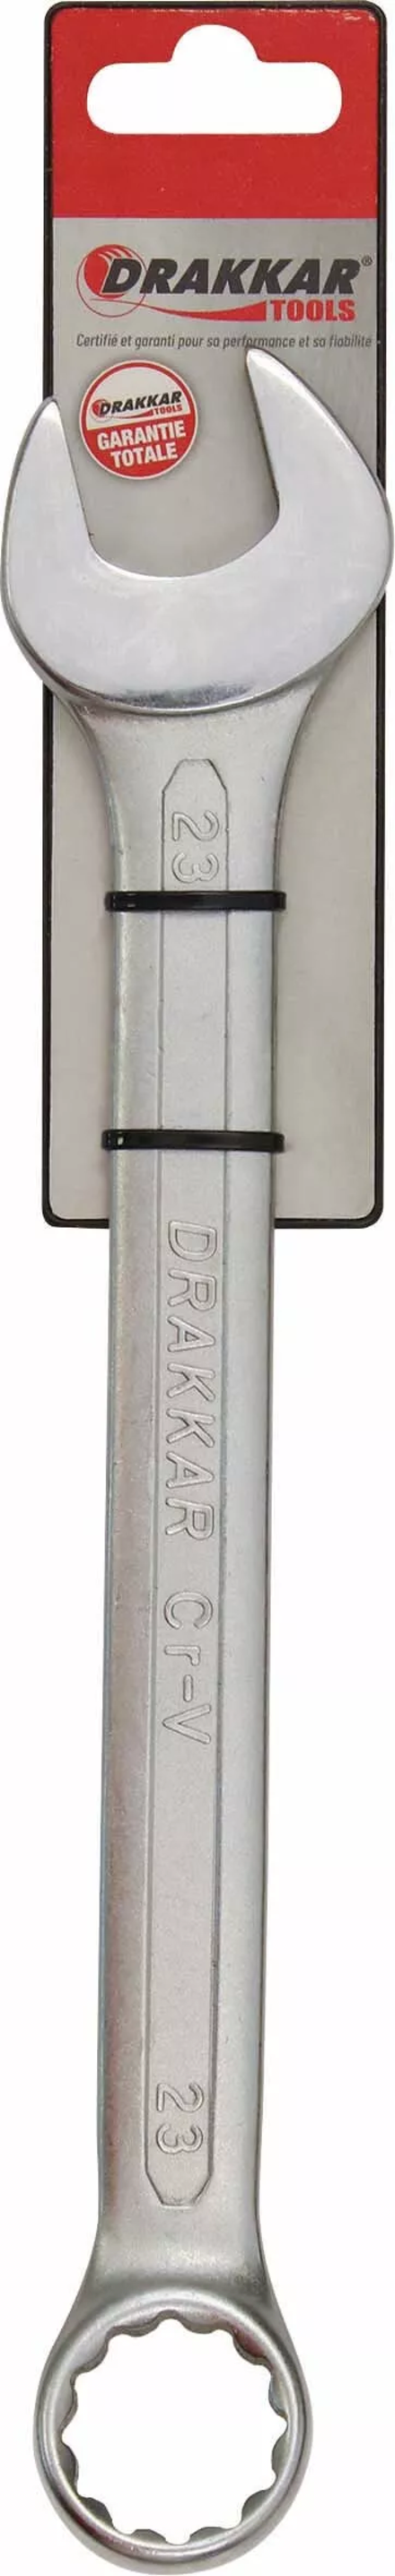 Cle mixte tete polie 23mm/carte dt DRAKKAR TOOLS - 13843